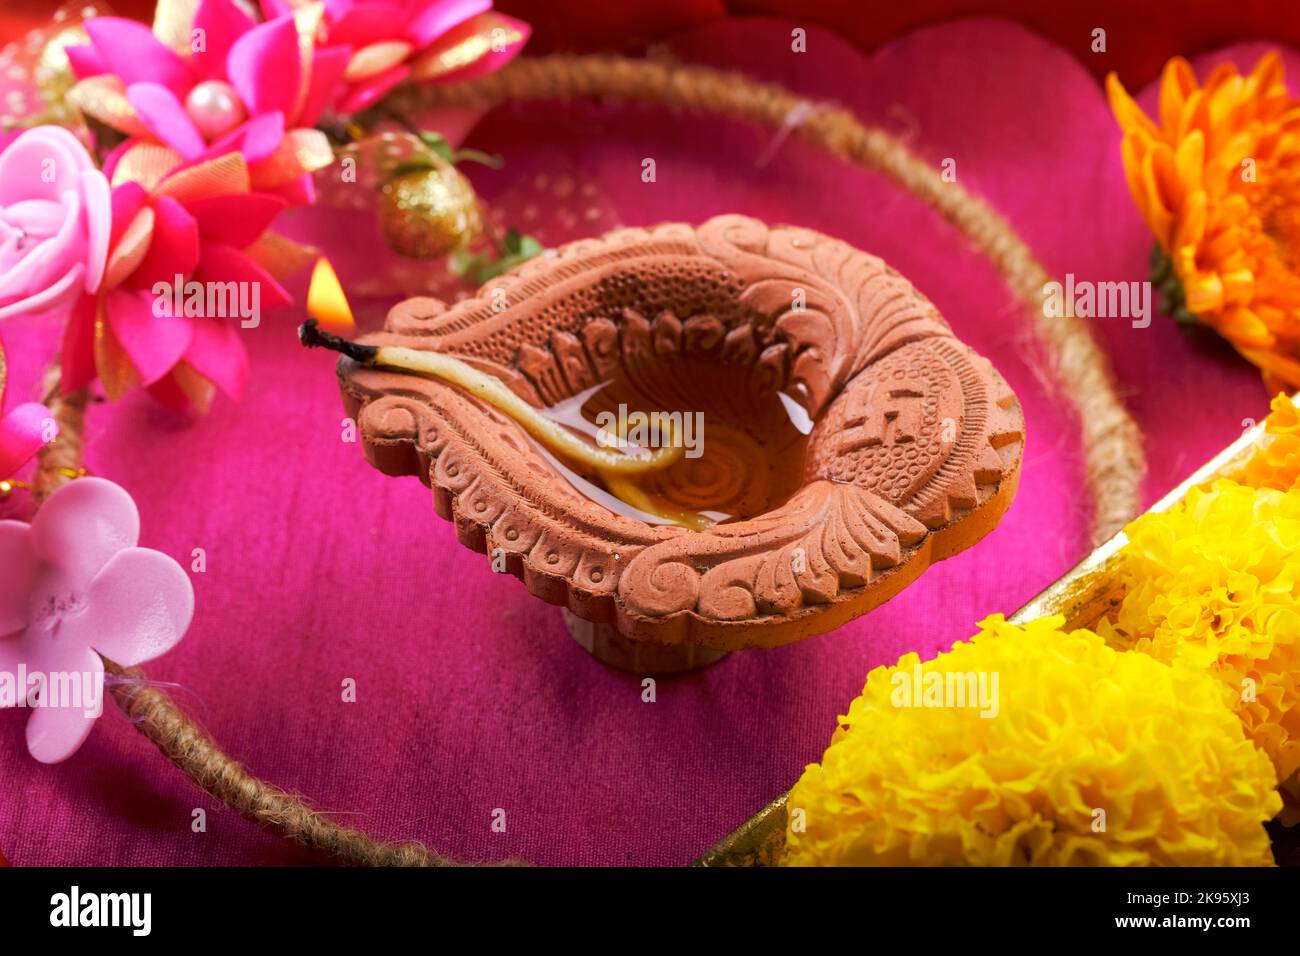 Happy Diwali, Clay Diya Lampen während Diwali, Hindu Festival der Lichter beleuchtet. Bunte traditionelle Öllampe Diya, Blumendekoration. Stockfoto